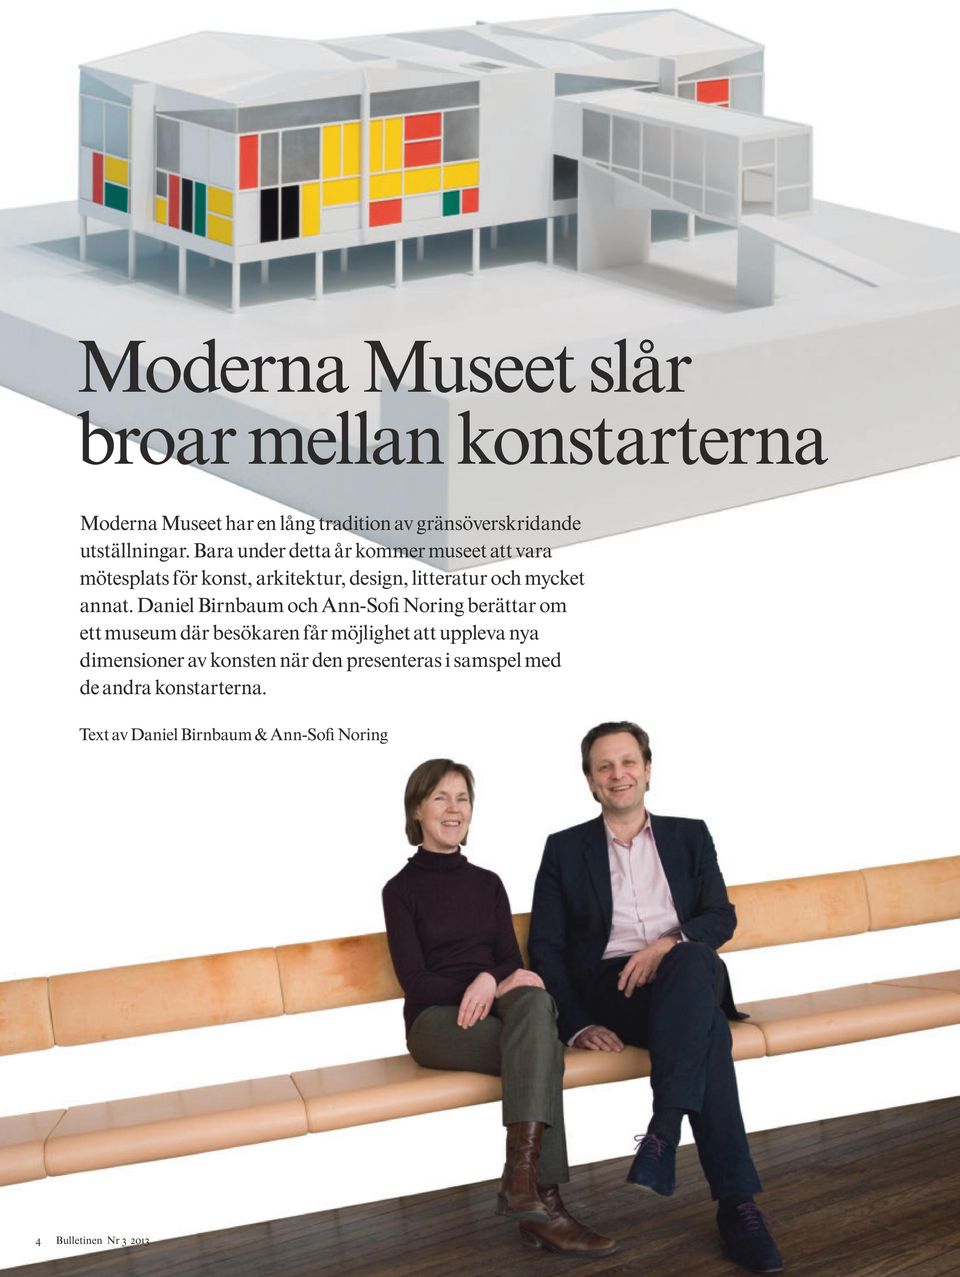 Daniel Birnbaum och Ann-Sofi Noring berättar om ett museum där besökaren får möjlighet att uppleva nya dimensioner av